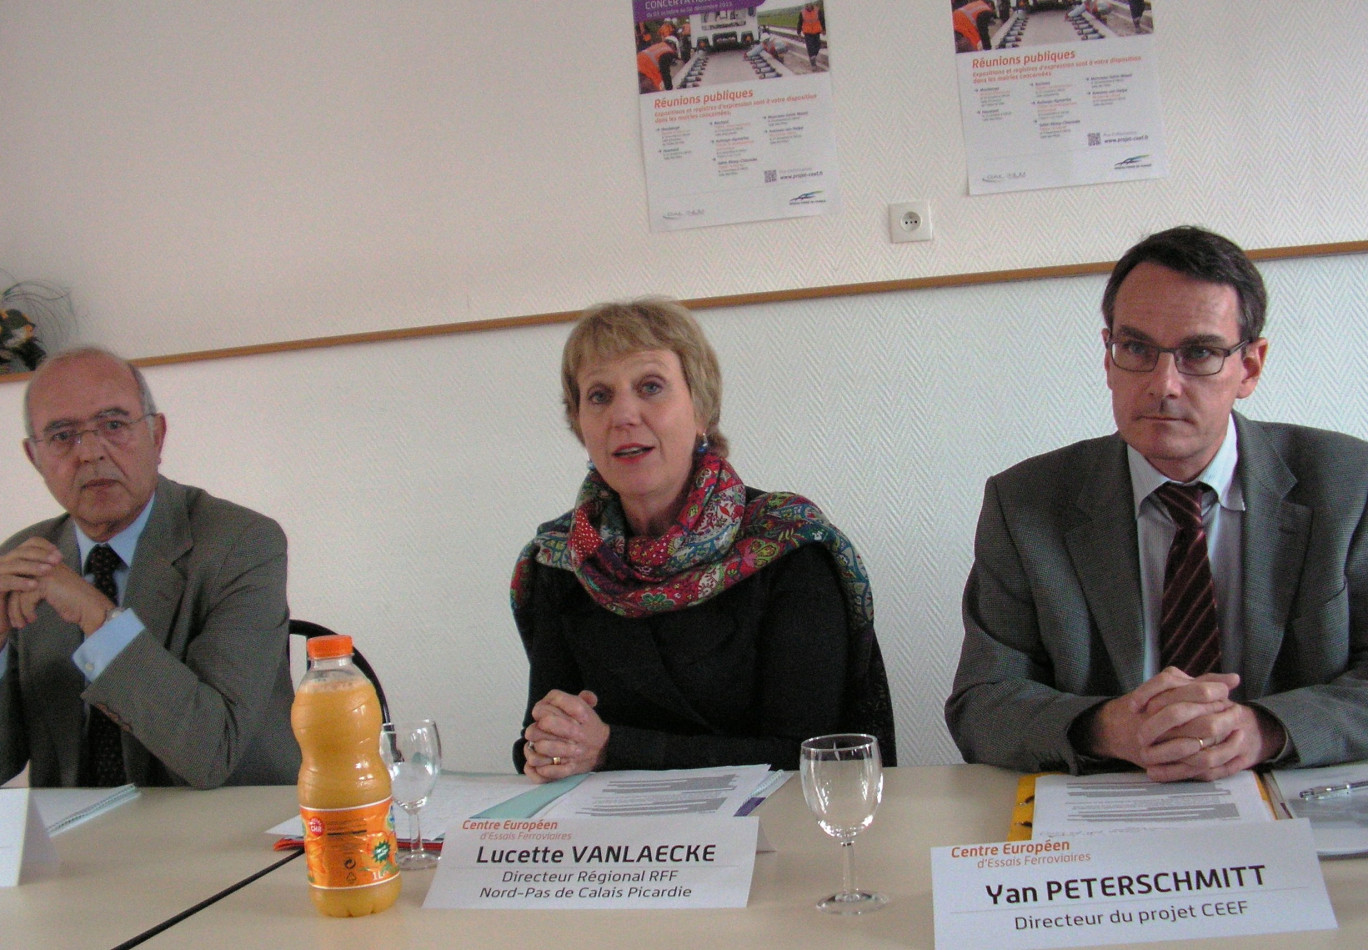 Les intervenants à ce lancement devant la presse le 3 octobre, à Avesnelles. De gauche à droite : Michel Gaillard (garant de la concertation, désigné par la Commission nationale du débat public) ; Lucette Vanlaecke, directrice régionale de RFF ; Yan Peterschmitt, directeur du projet.